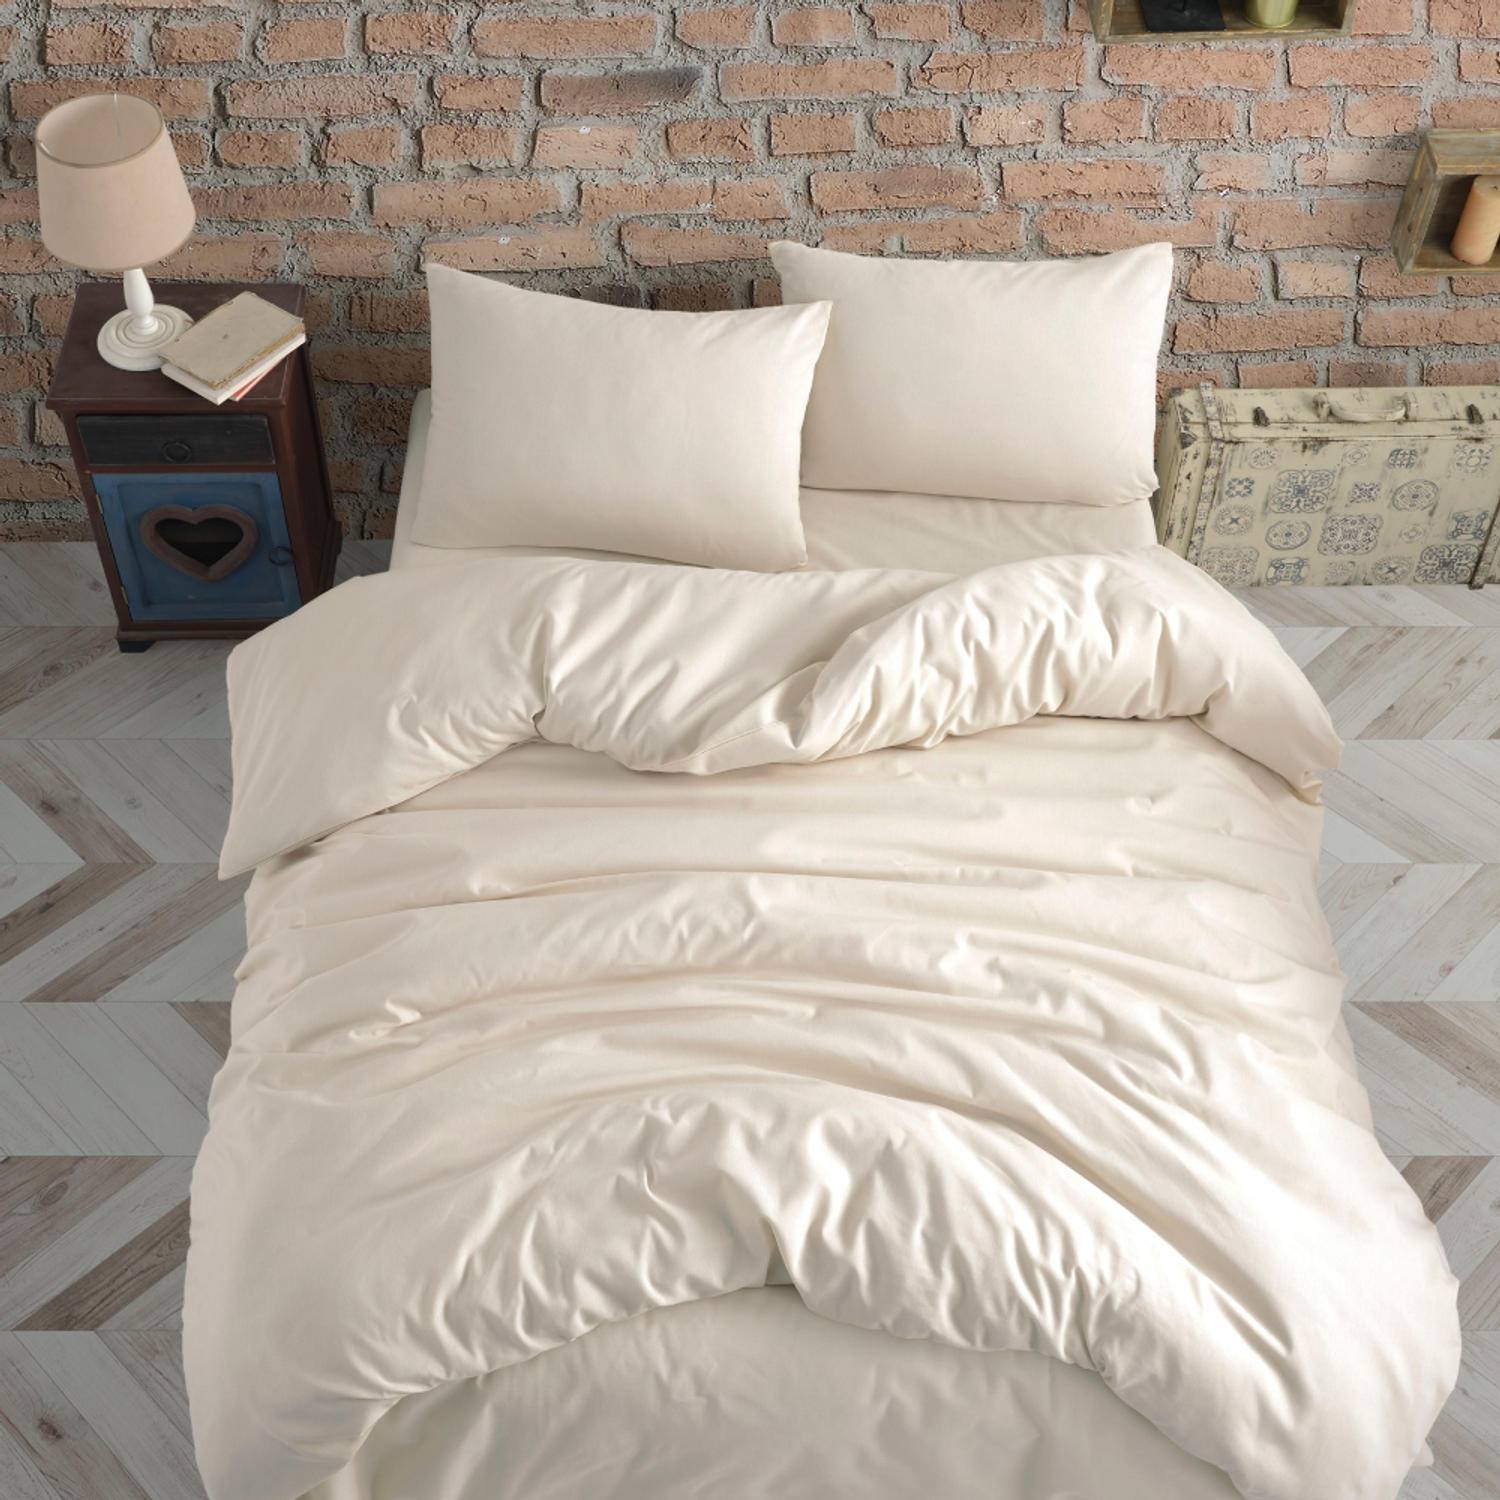 Комплект постельного белья ATLASPLUS размер ЕВРО ранфорс хлопок цвет кремовый - фото 2